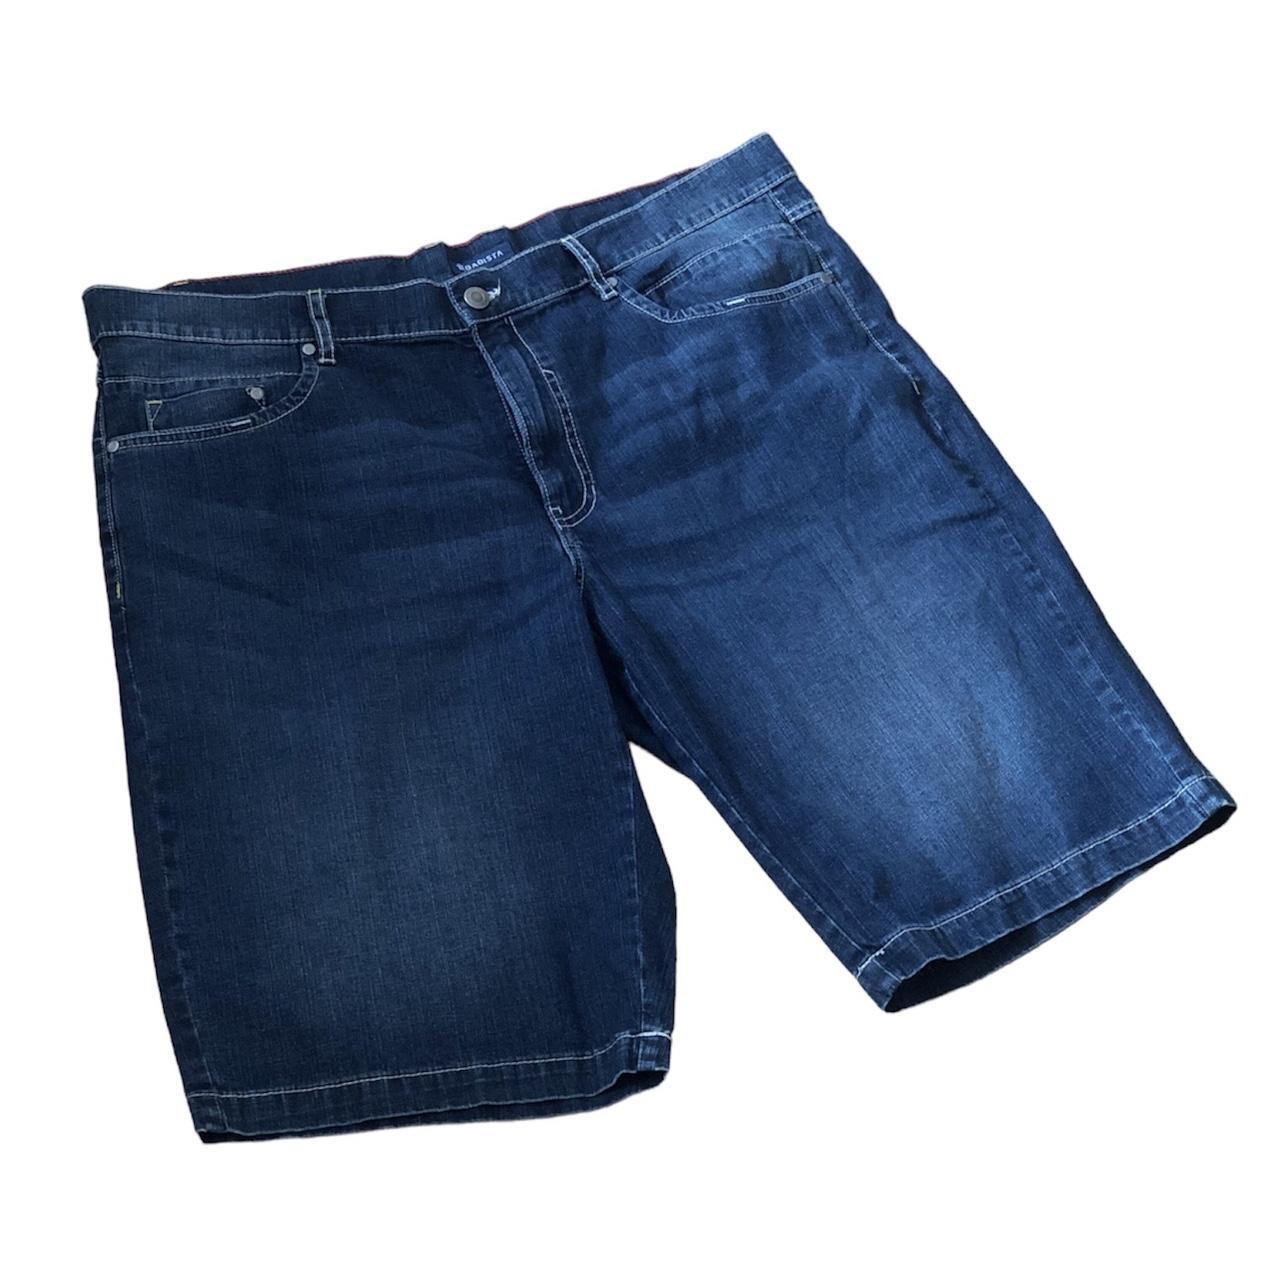 Denim lightweight baggy jorts / long shorts with... - Depop